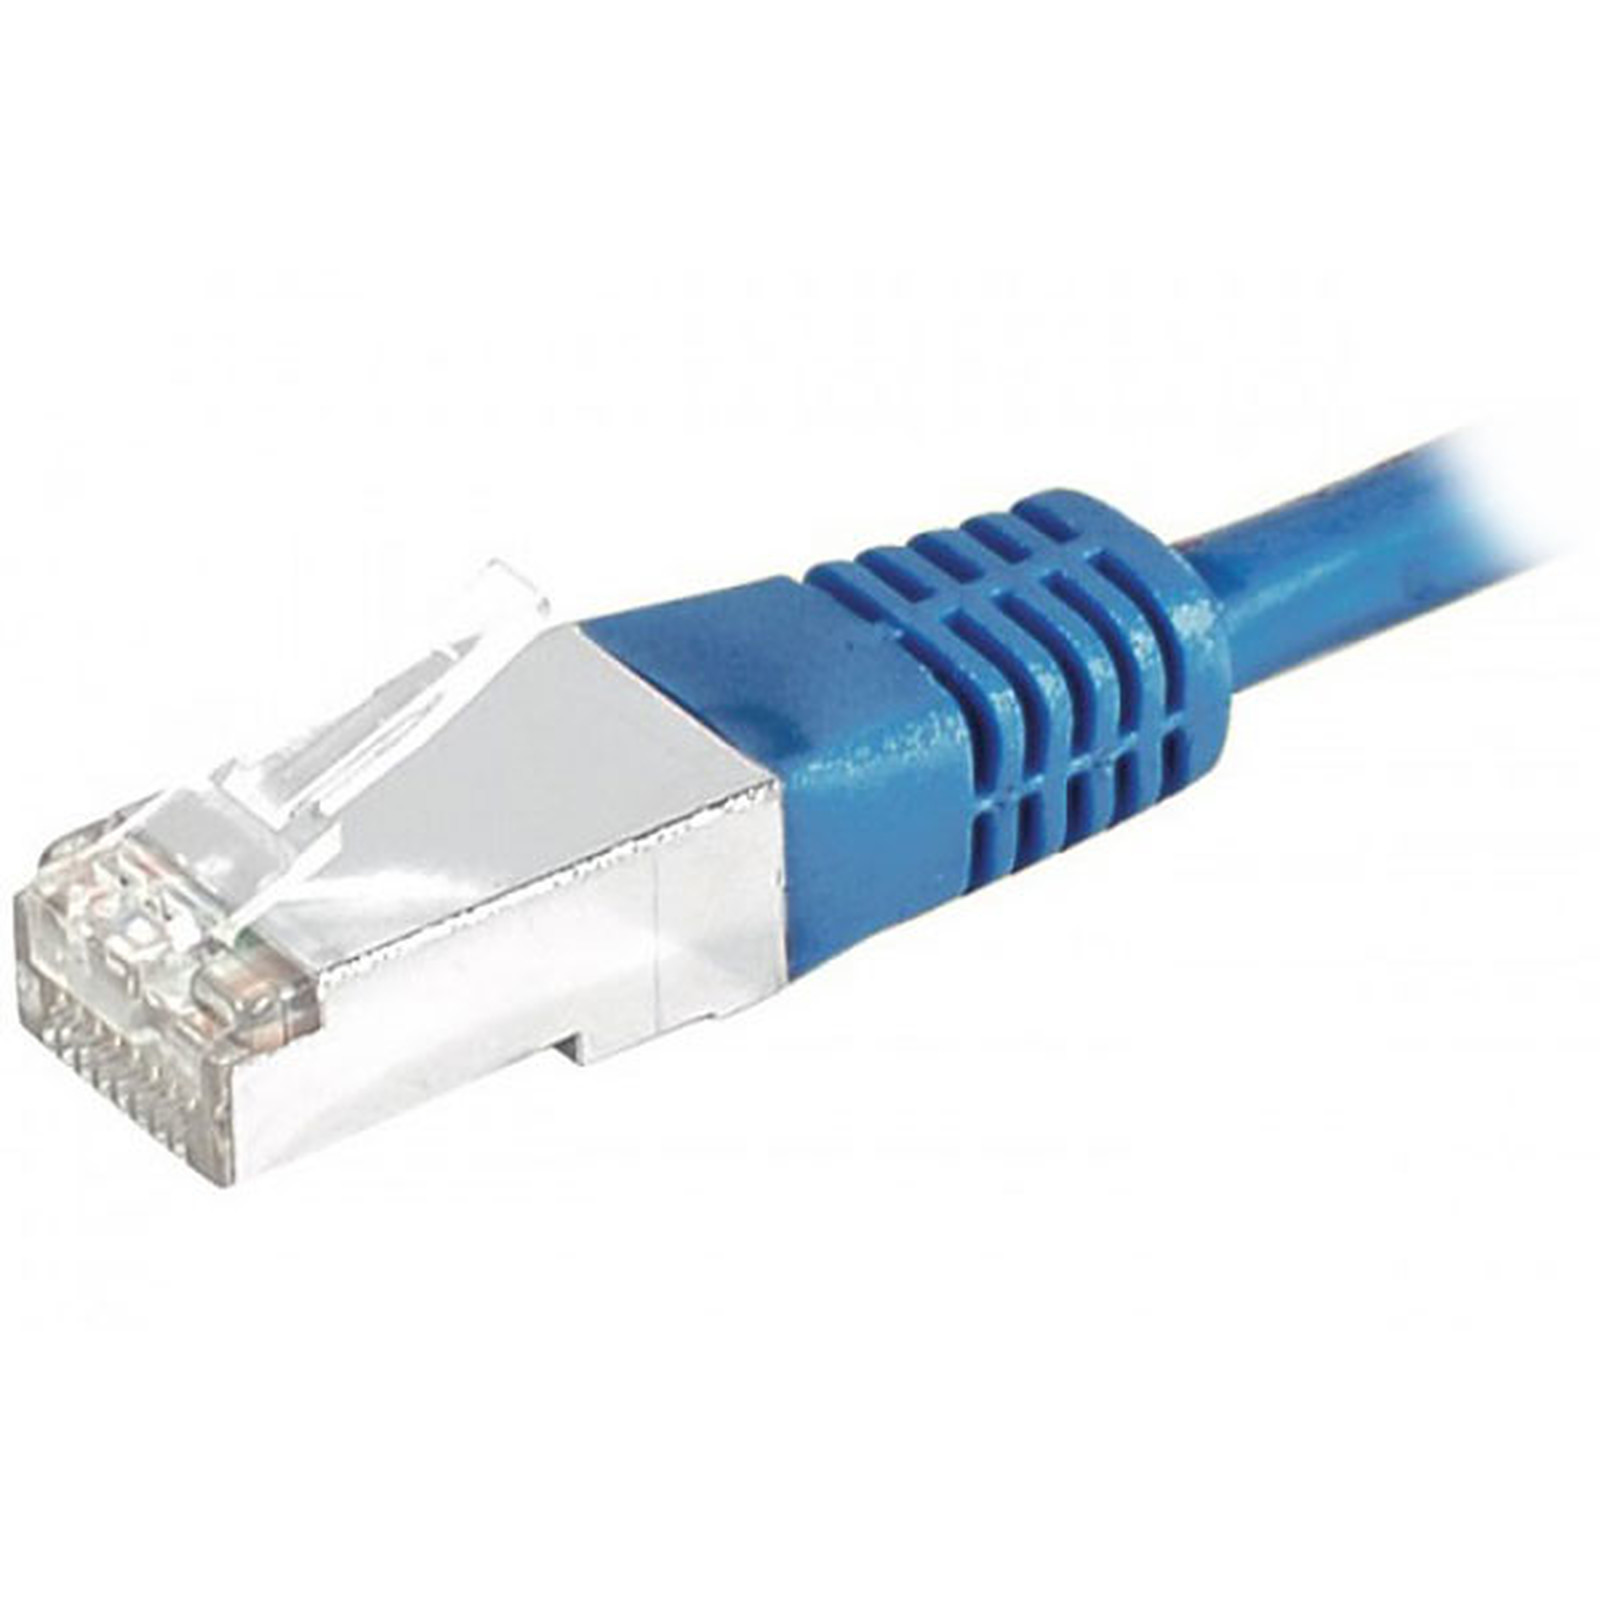 Cable RJ45 categorie 6 S/FTP 1 m (Bleu) - Cable RJ45 Generique